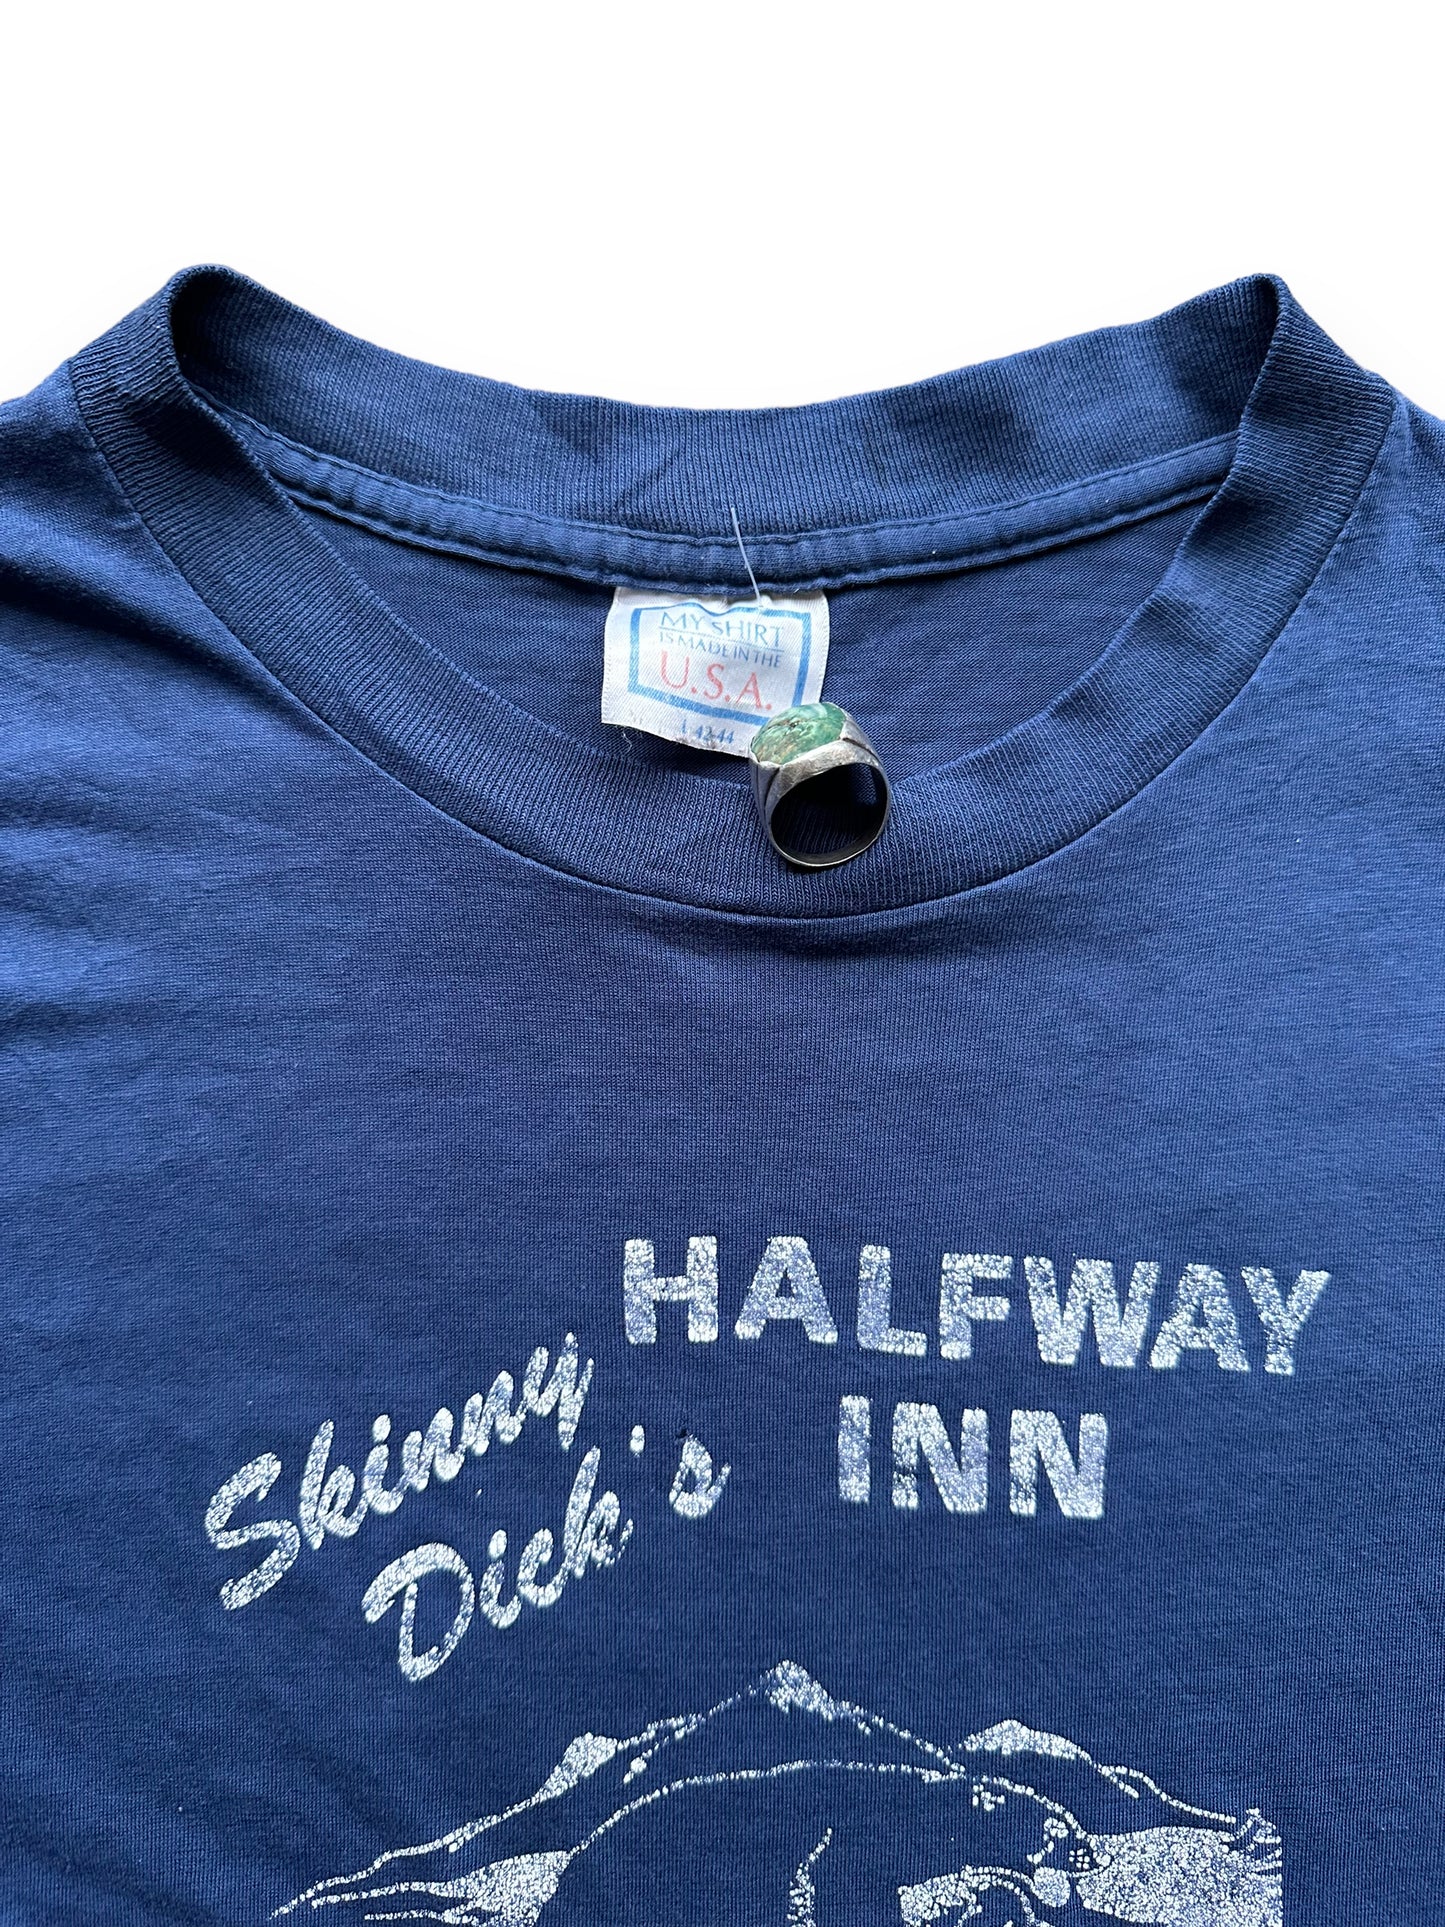 Tag shot of Vintage Skinny Dicks Halfway Inn Alaska Tee SZ L | Vintage Alaska T-Shirts Seattle | Barn Owl Vintage Tees Seattle